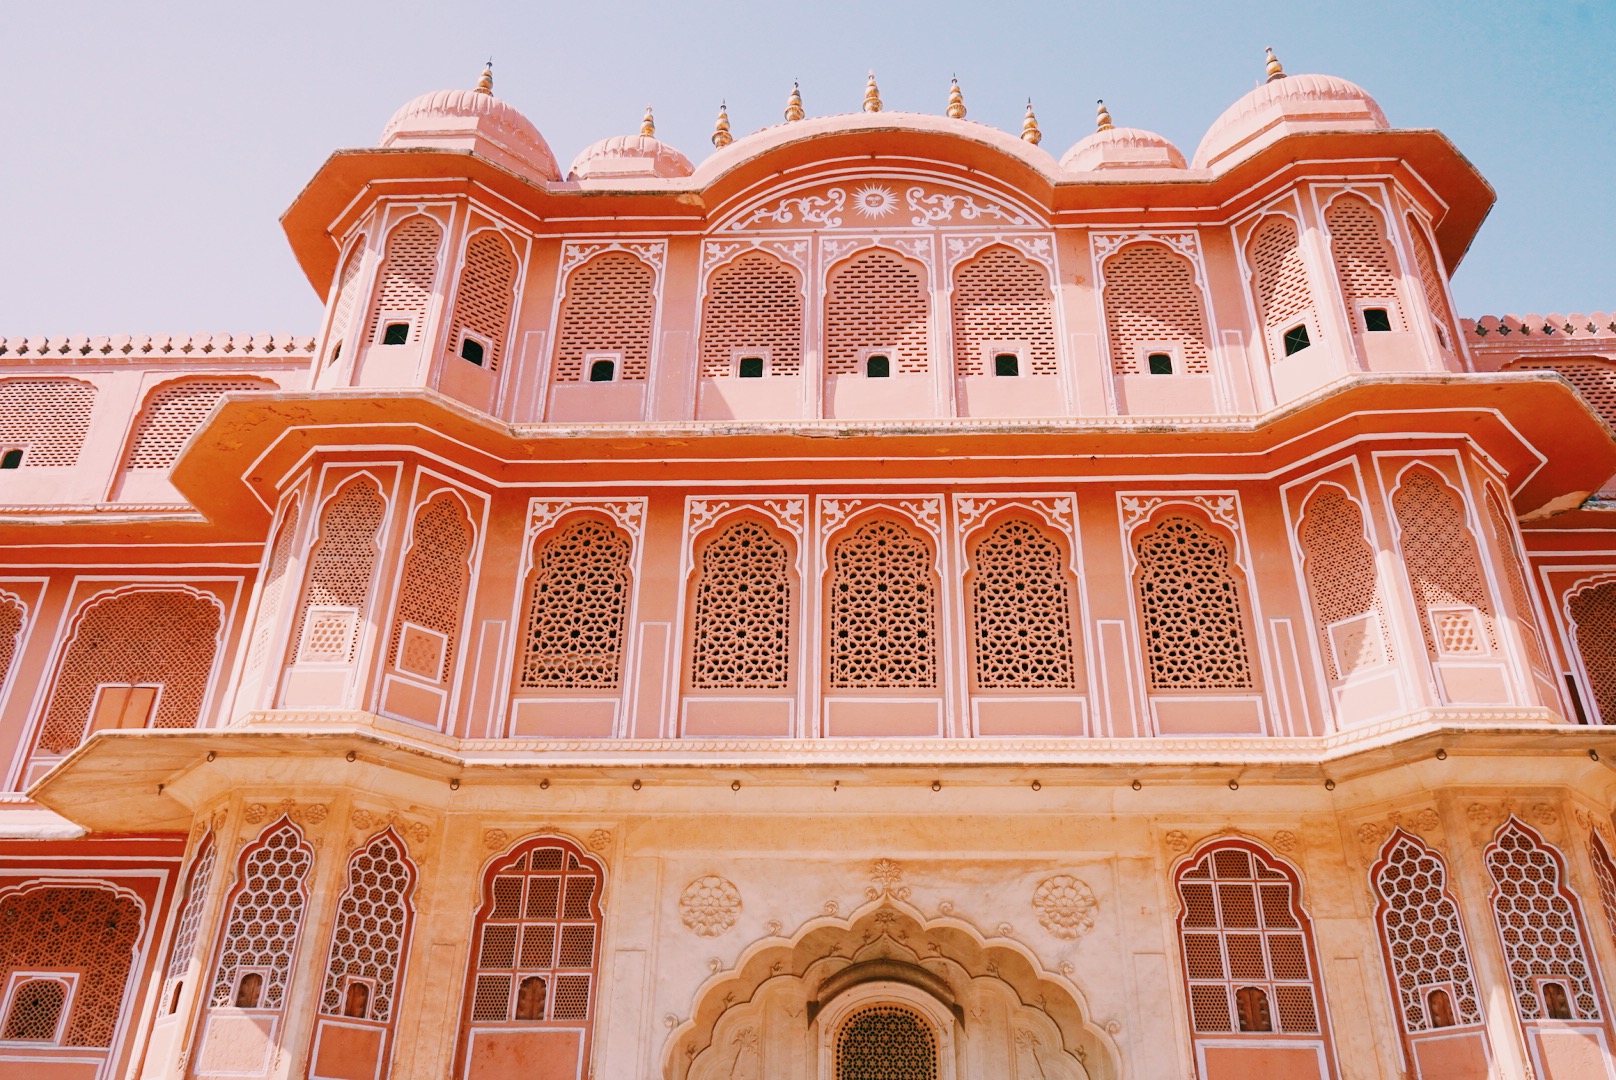 印度拉贾斯坦邦斋浦尔琥珀堡景观 库存照片. 图片 包括有 印第安语, 历史记录, 宫殿, 著名, 有历史 - 197564656